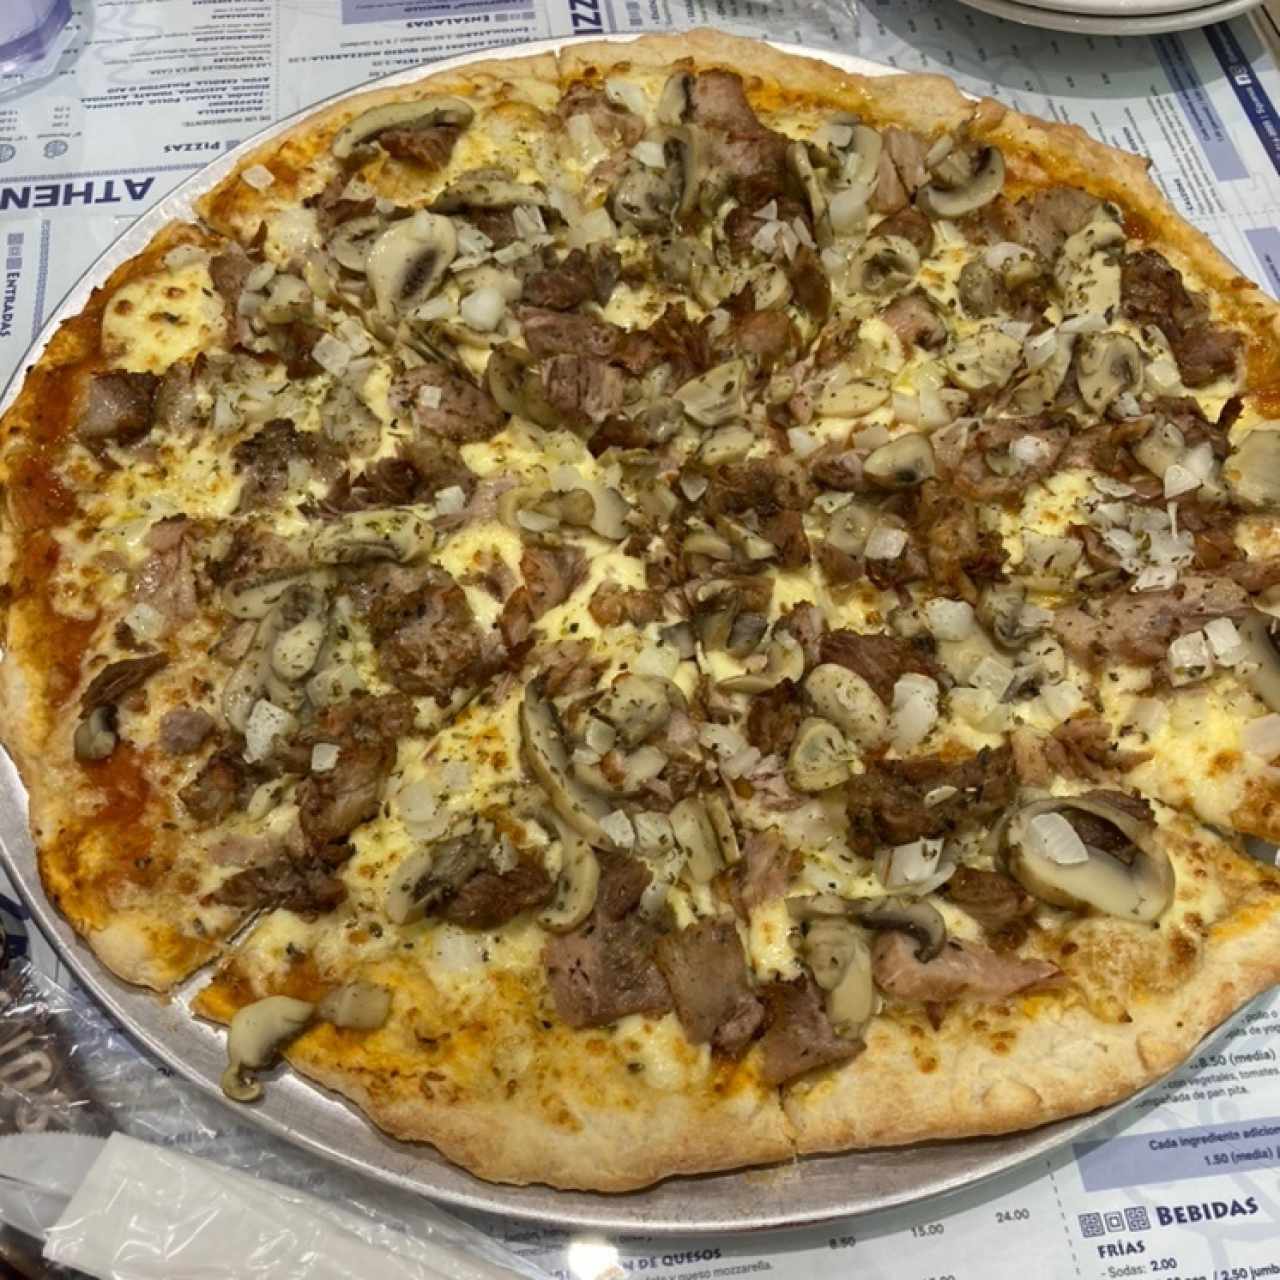 Pizzas - Athens